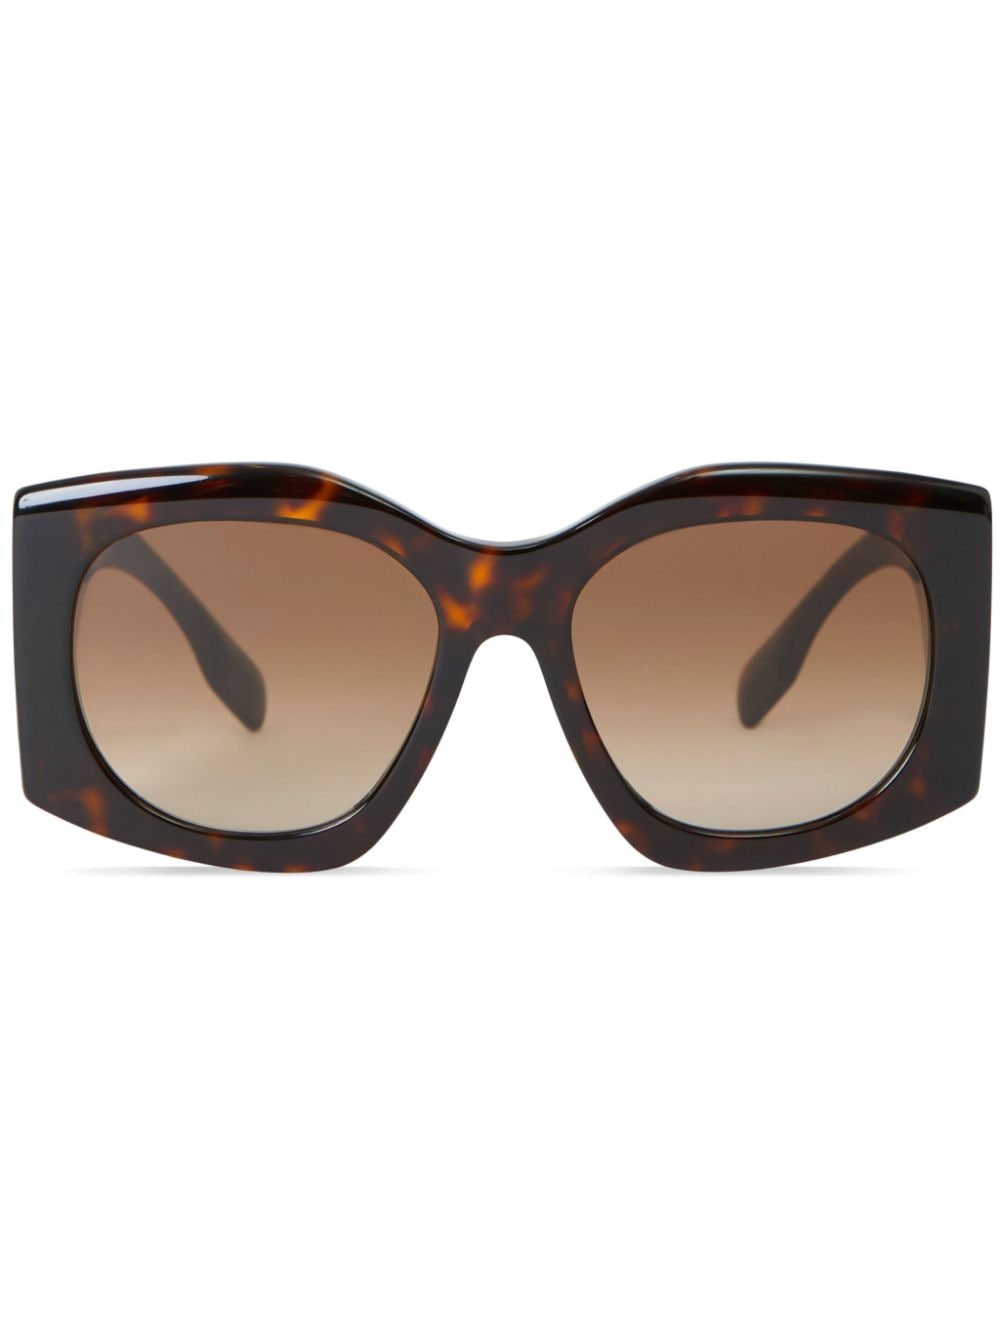 Burberry Oversized Geometric Frame Sunglasses In Tortoiseshell